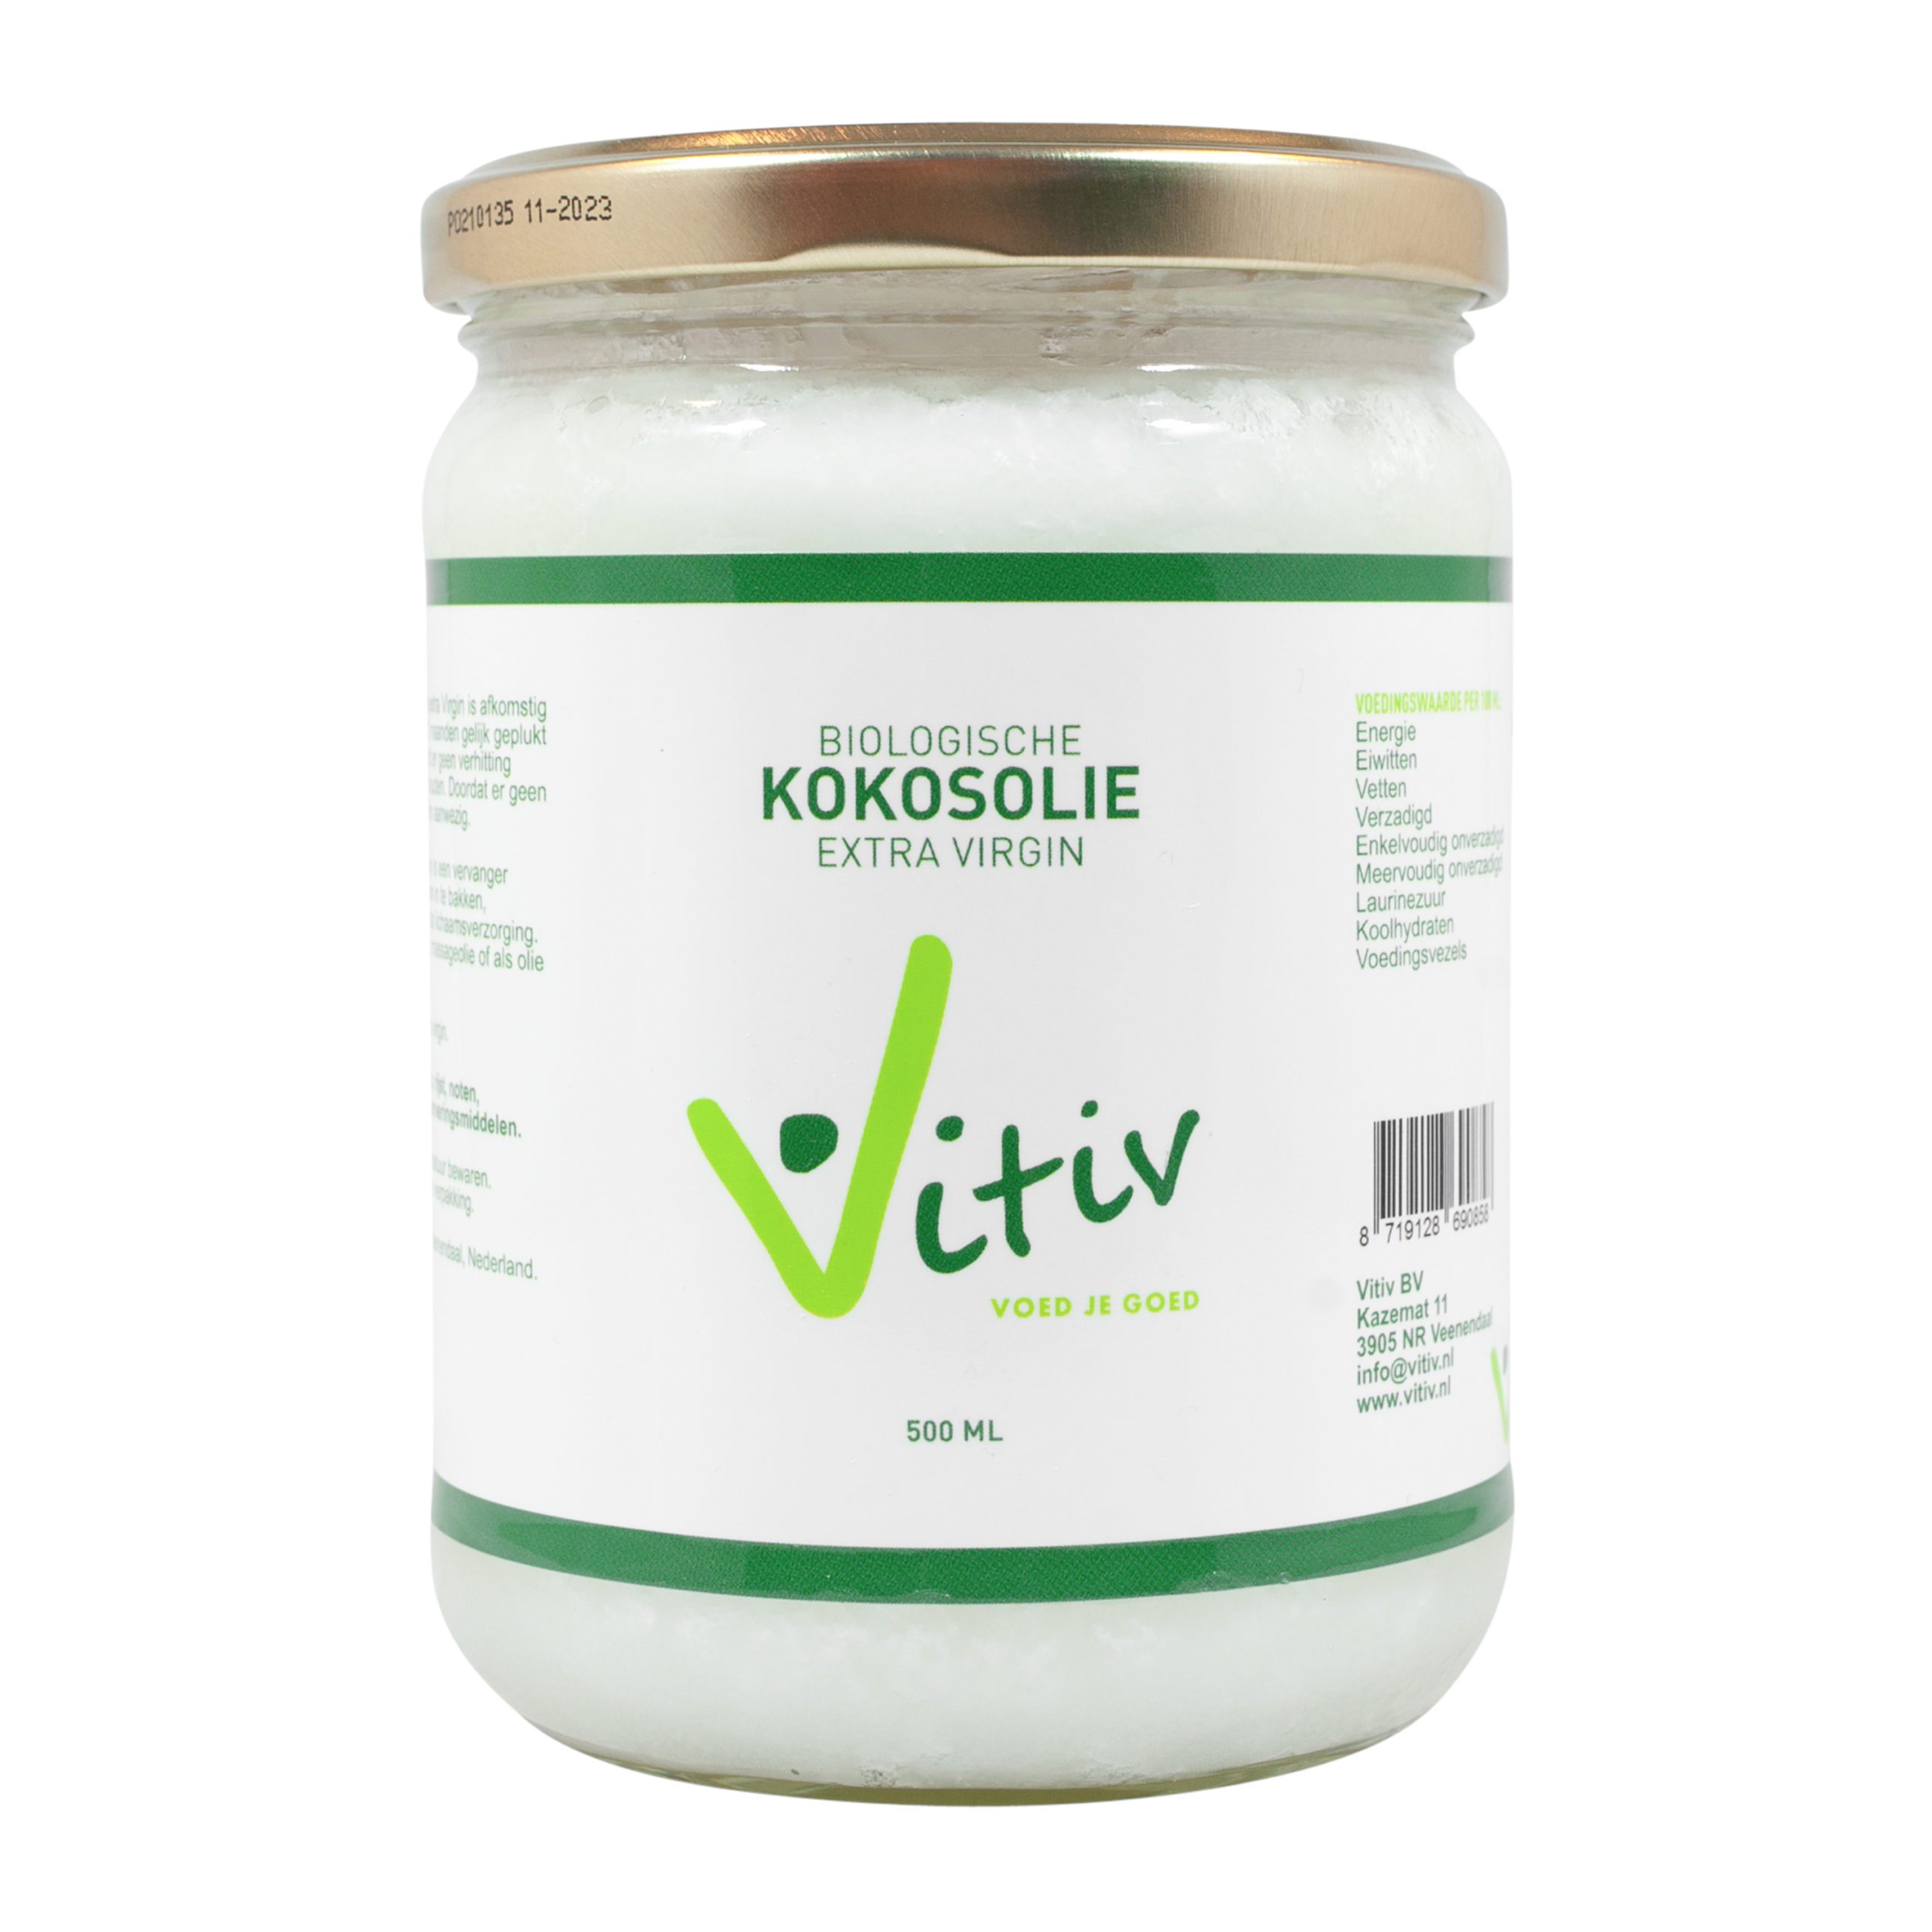 Vooruitgaan kopiëren Korting Kokosolie extra virgin 500ml - Vitiv.nl